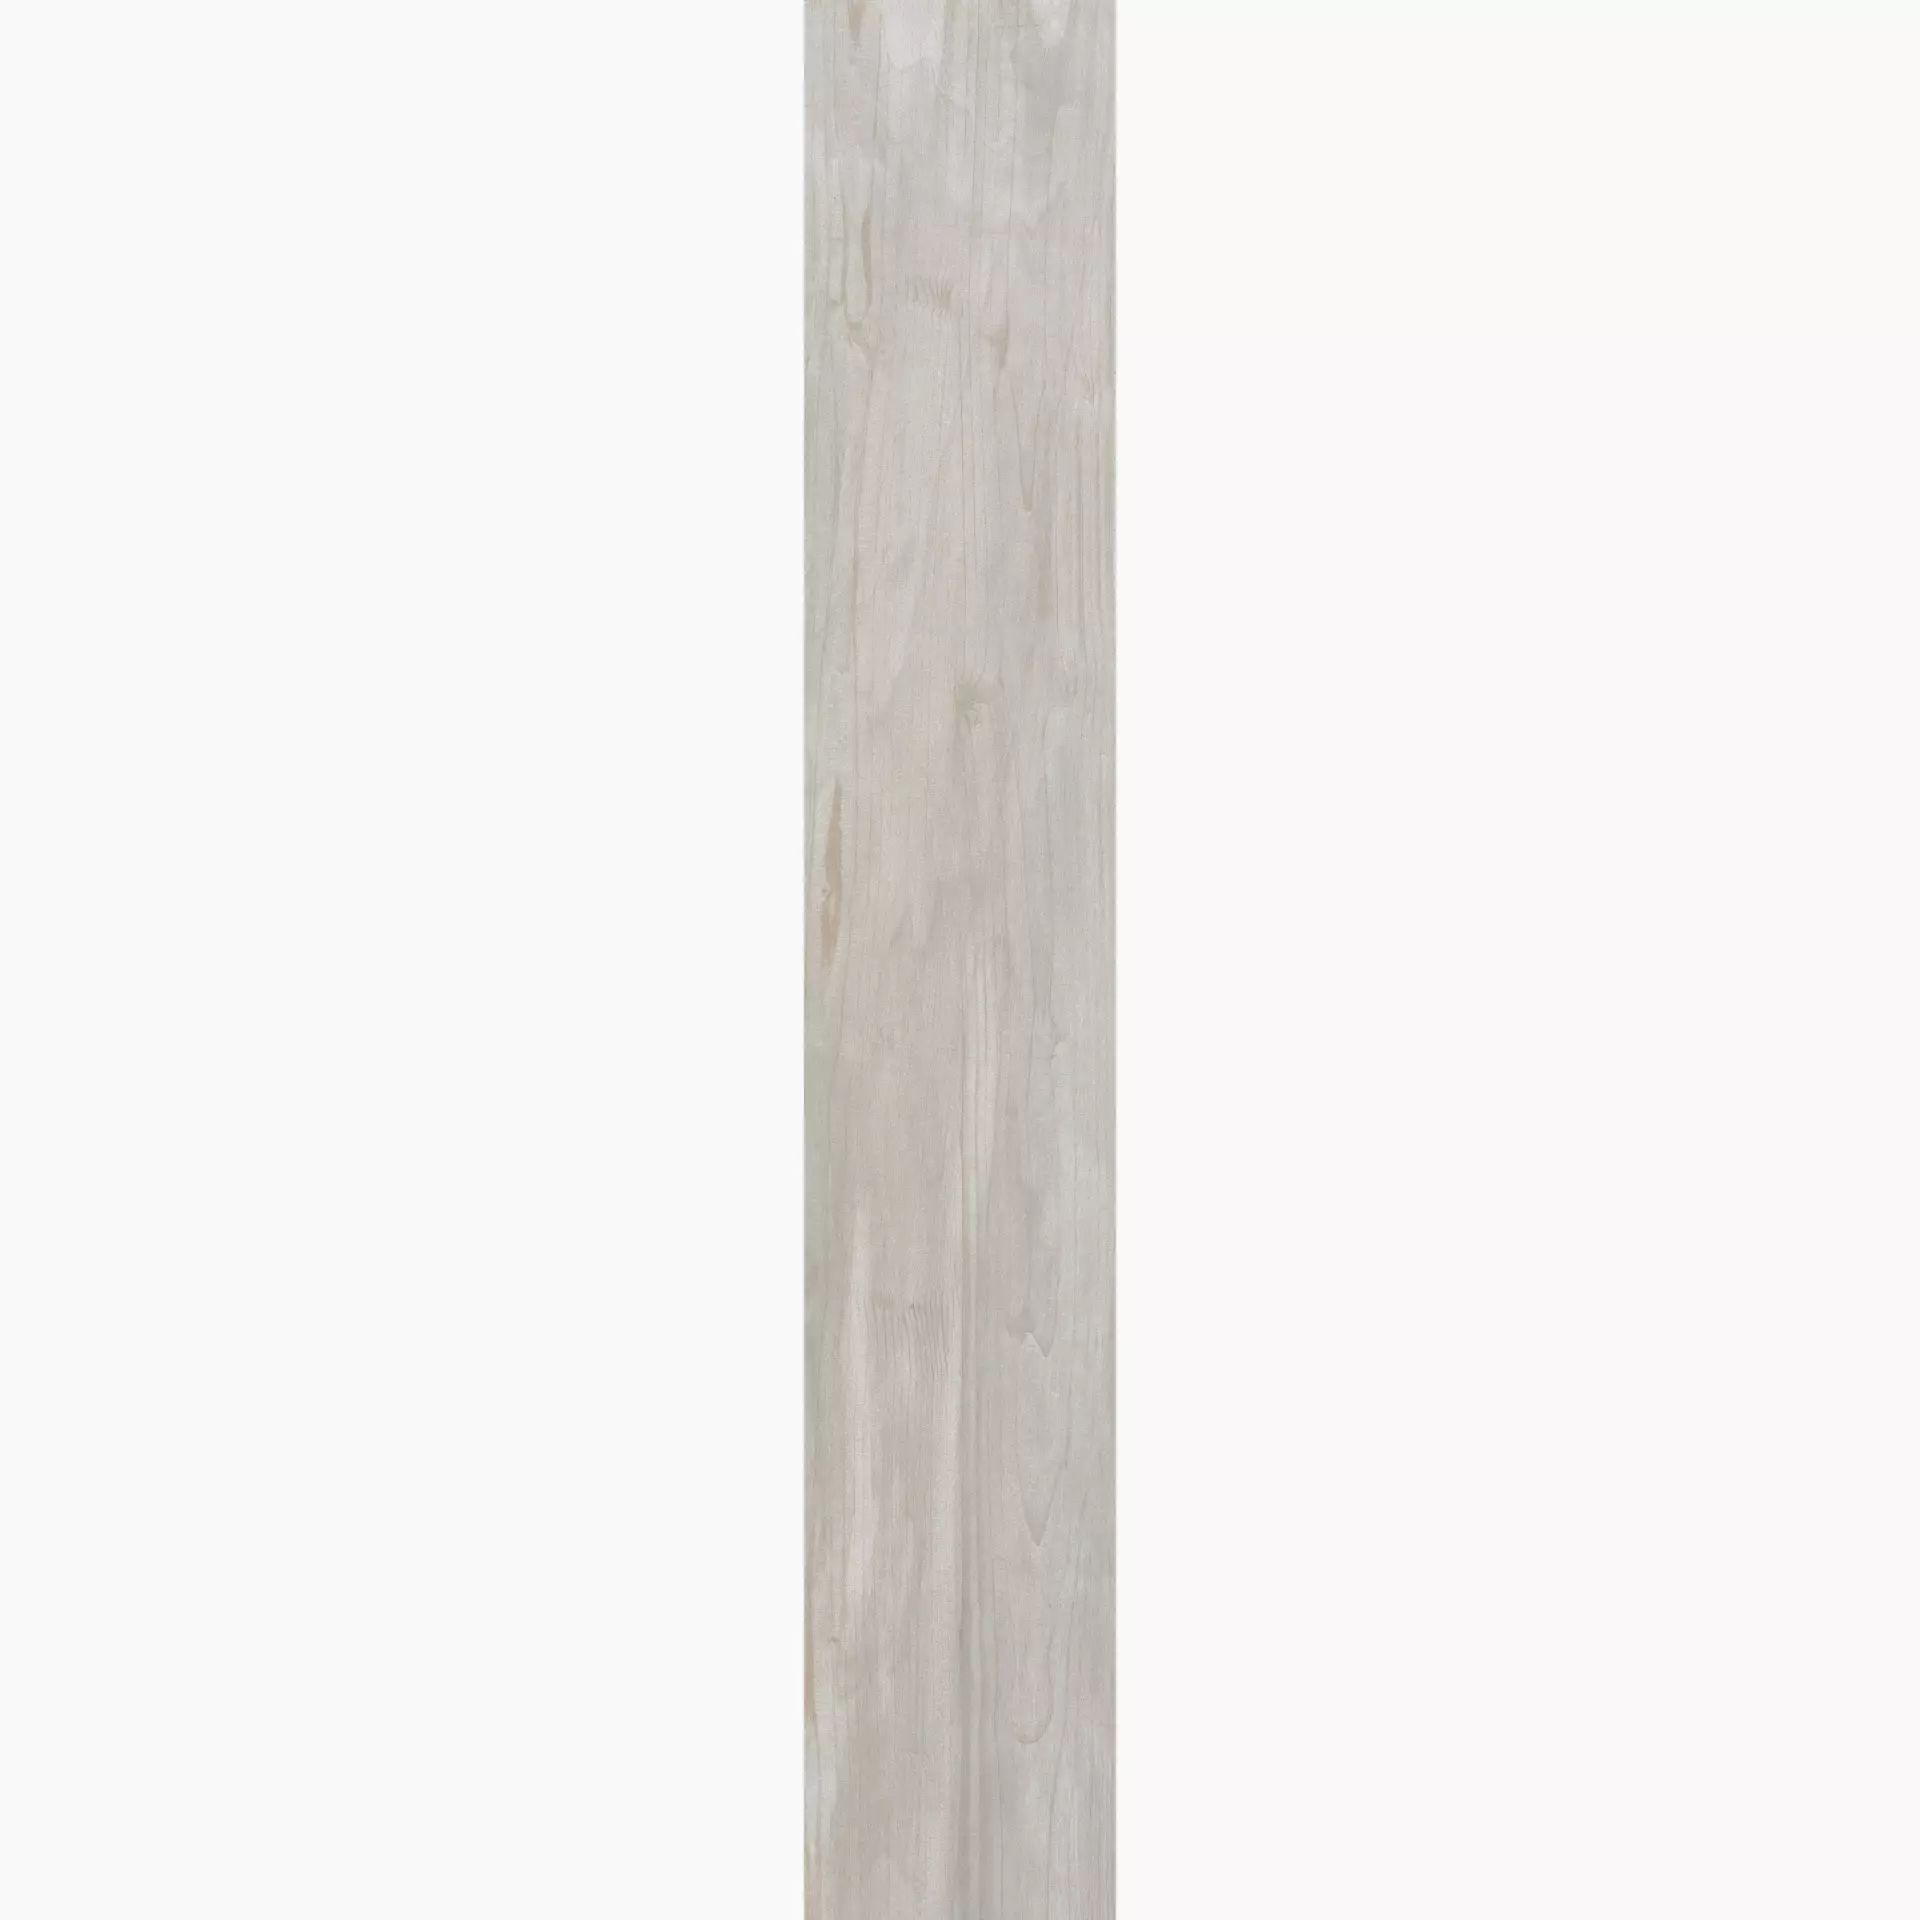 Rak Circle Wood Ivory Natural – Matt A99GZCRWIV0W2S5R 19,5x120cm rectified 9mm